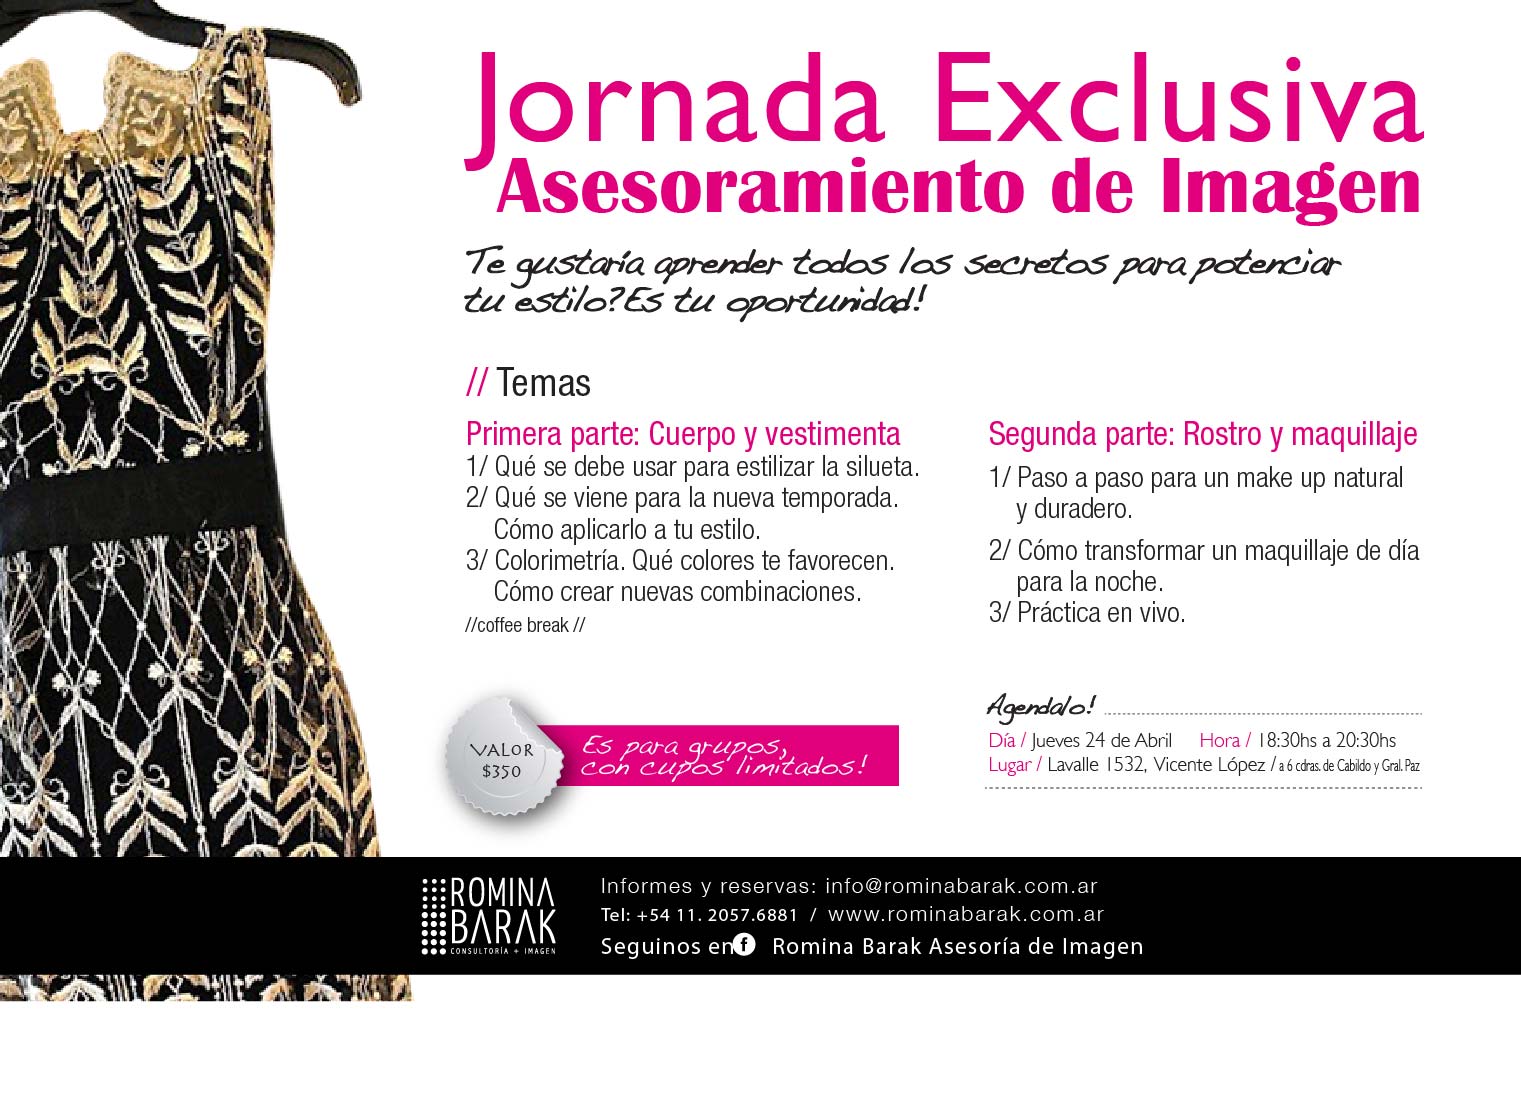 Flyer Jornada Exclusiva - Marzo 2014